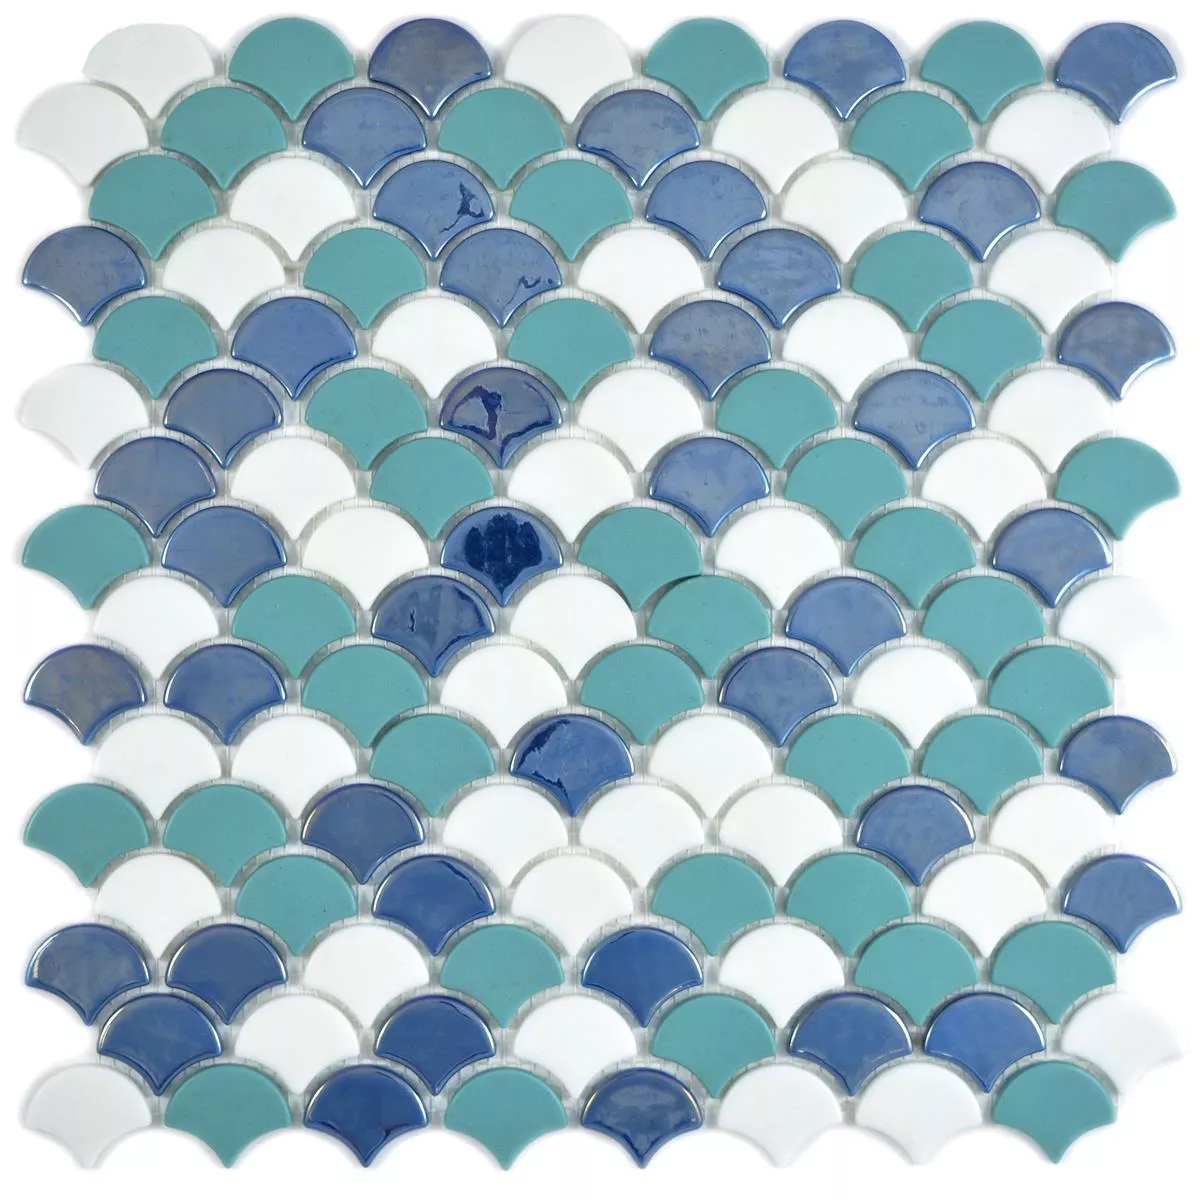 Sample Glass Mosaic Tiles Laurenz Color Mix